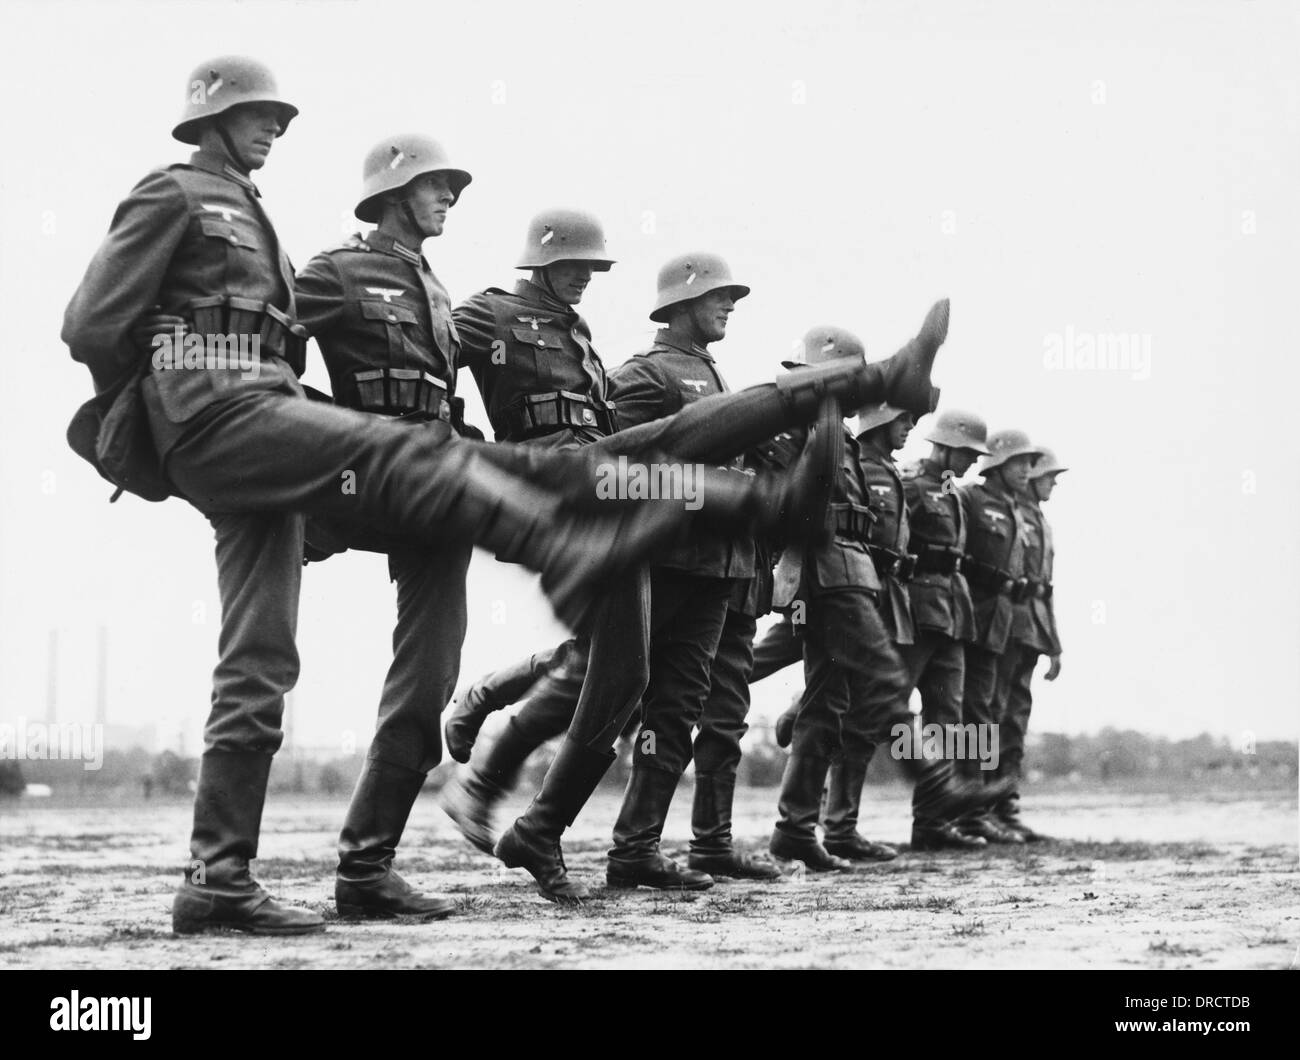 german army ww2